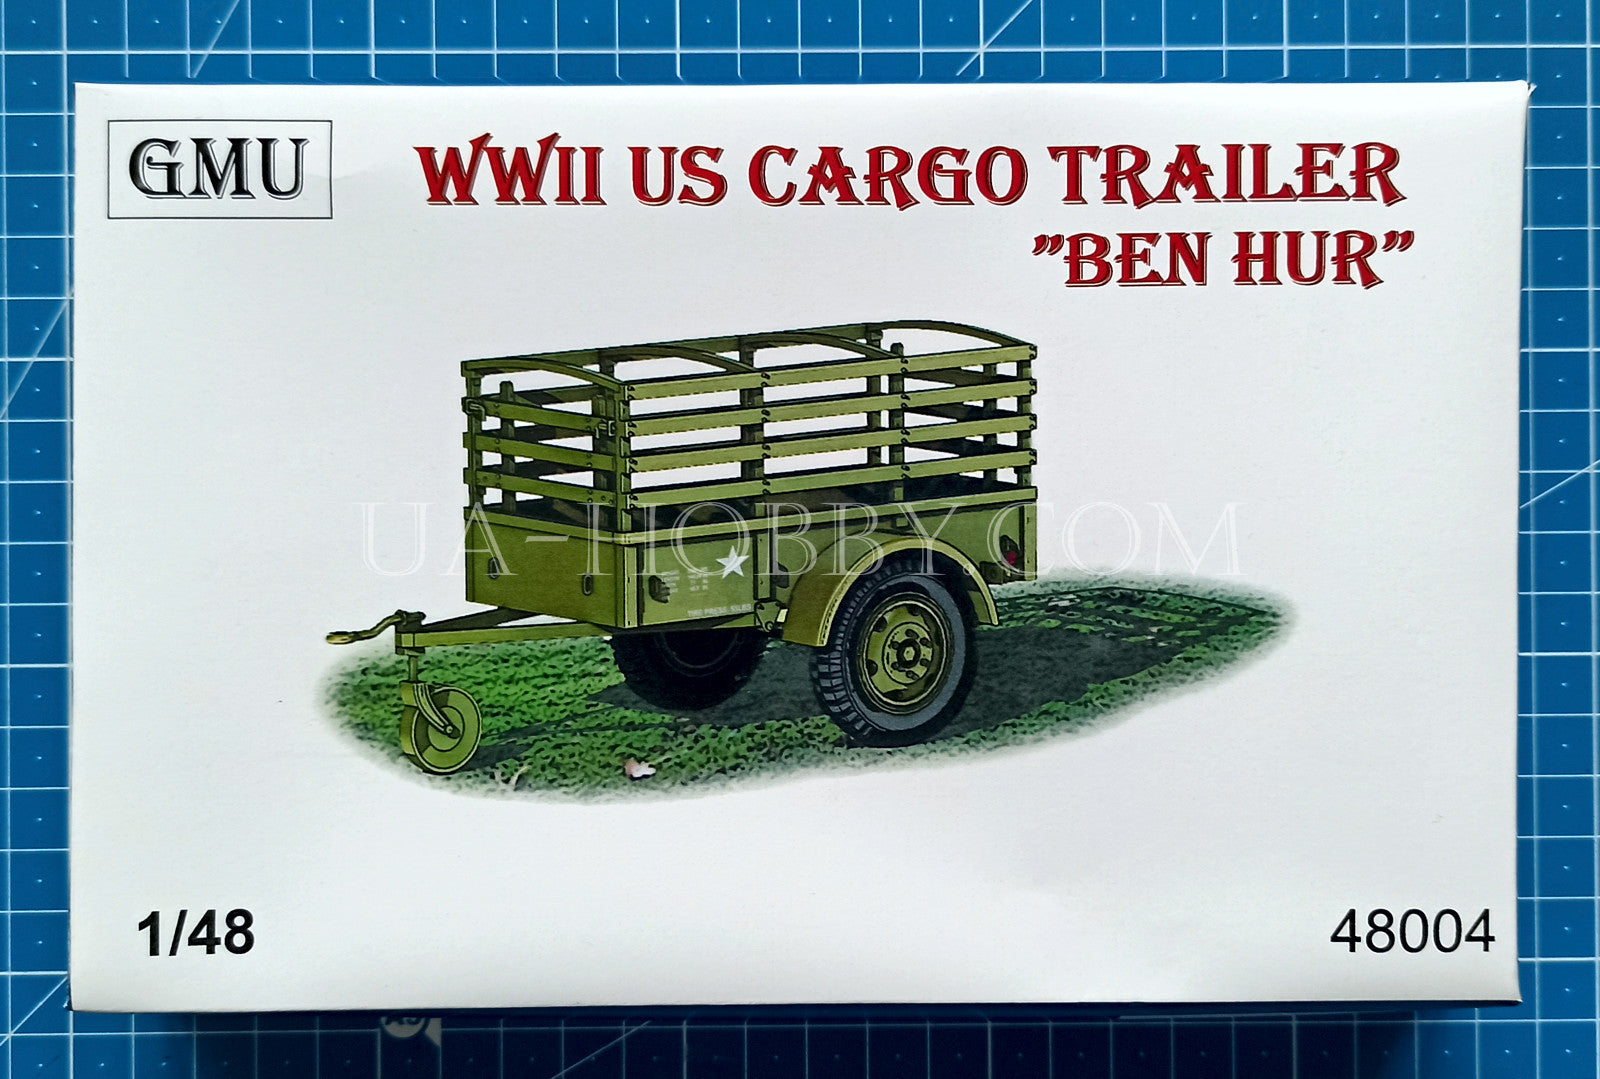 1/48 WWII US Cargo Trailer "Ben Hur". GMU 48004